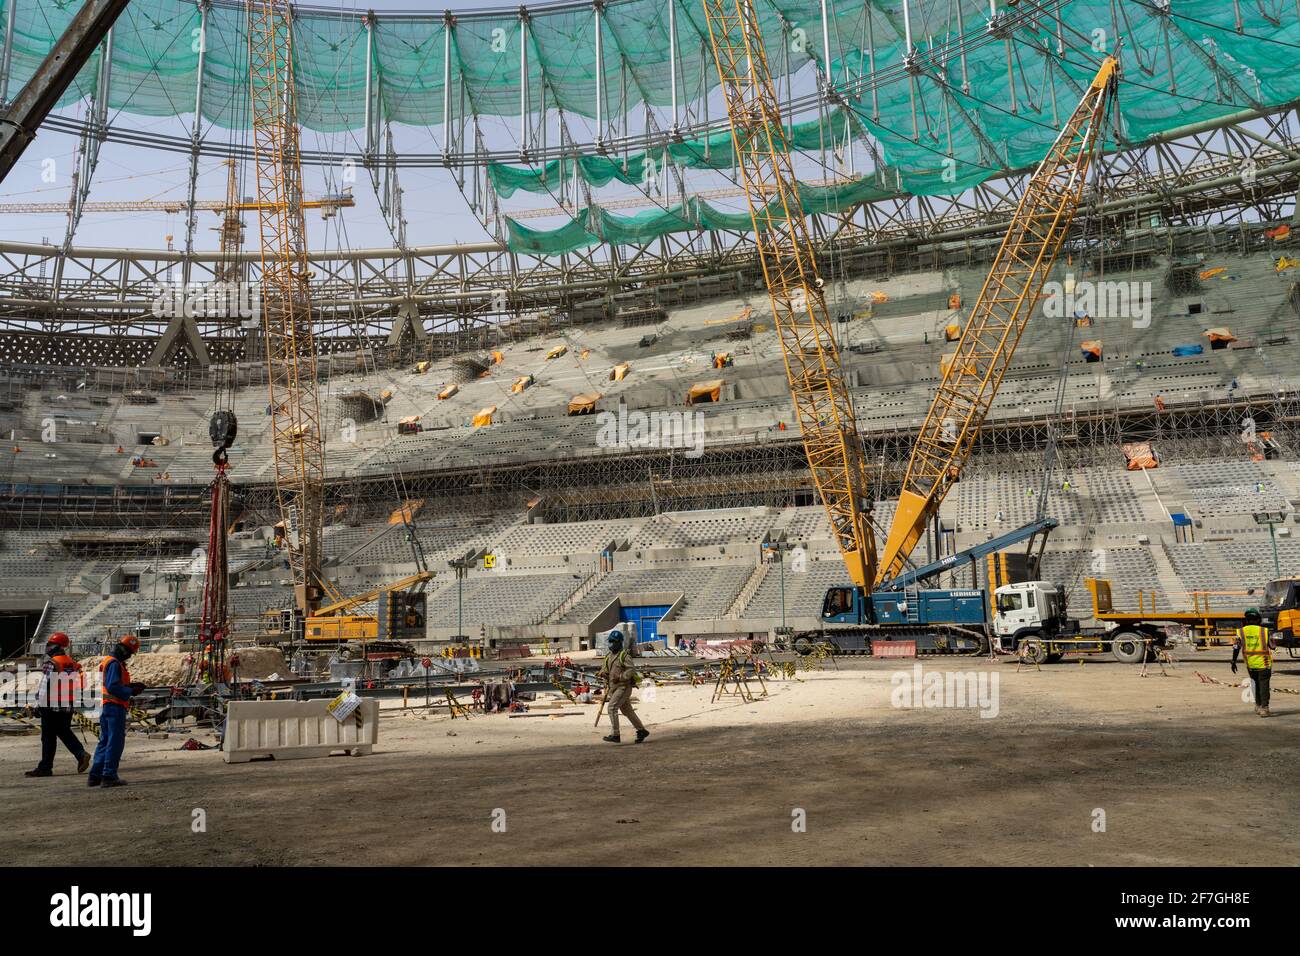 Stade Lusail, Lusail, Qatar, 5 avril 2022 - Construction du stade Lusail de 80,000 places qui doit tenir le dernier match de la coupe du monde de la FIFA 2022 qui doit se tenir au Qatar du 21 novembre au 18 décembre 2022. Ce sera la première coupe du monde jamais organisée dans le monde arabe et la première dans un pays à majorité musulmane. Banque D'Images